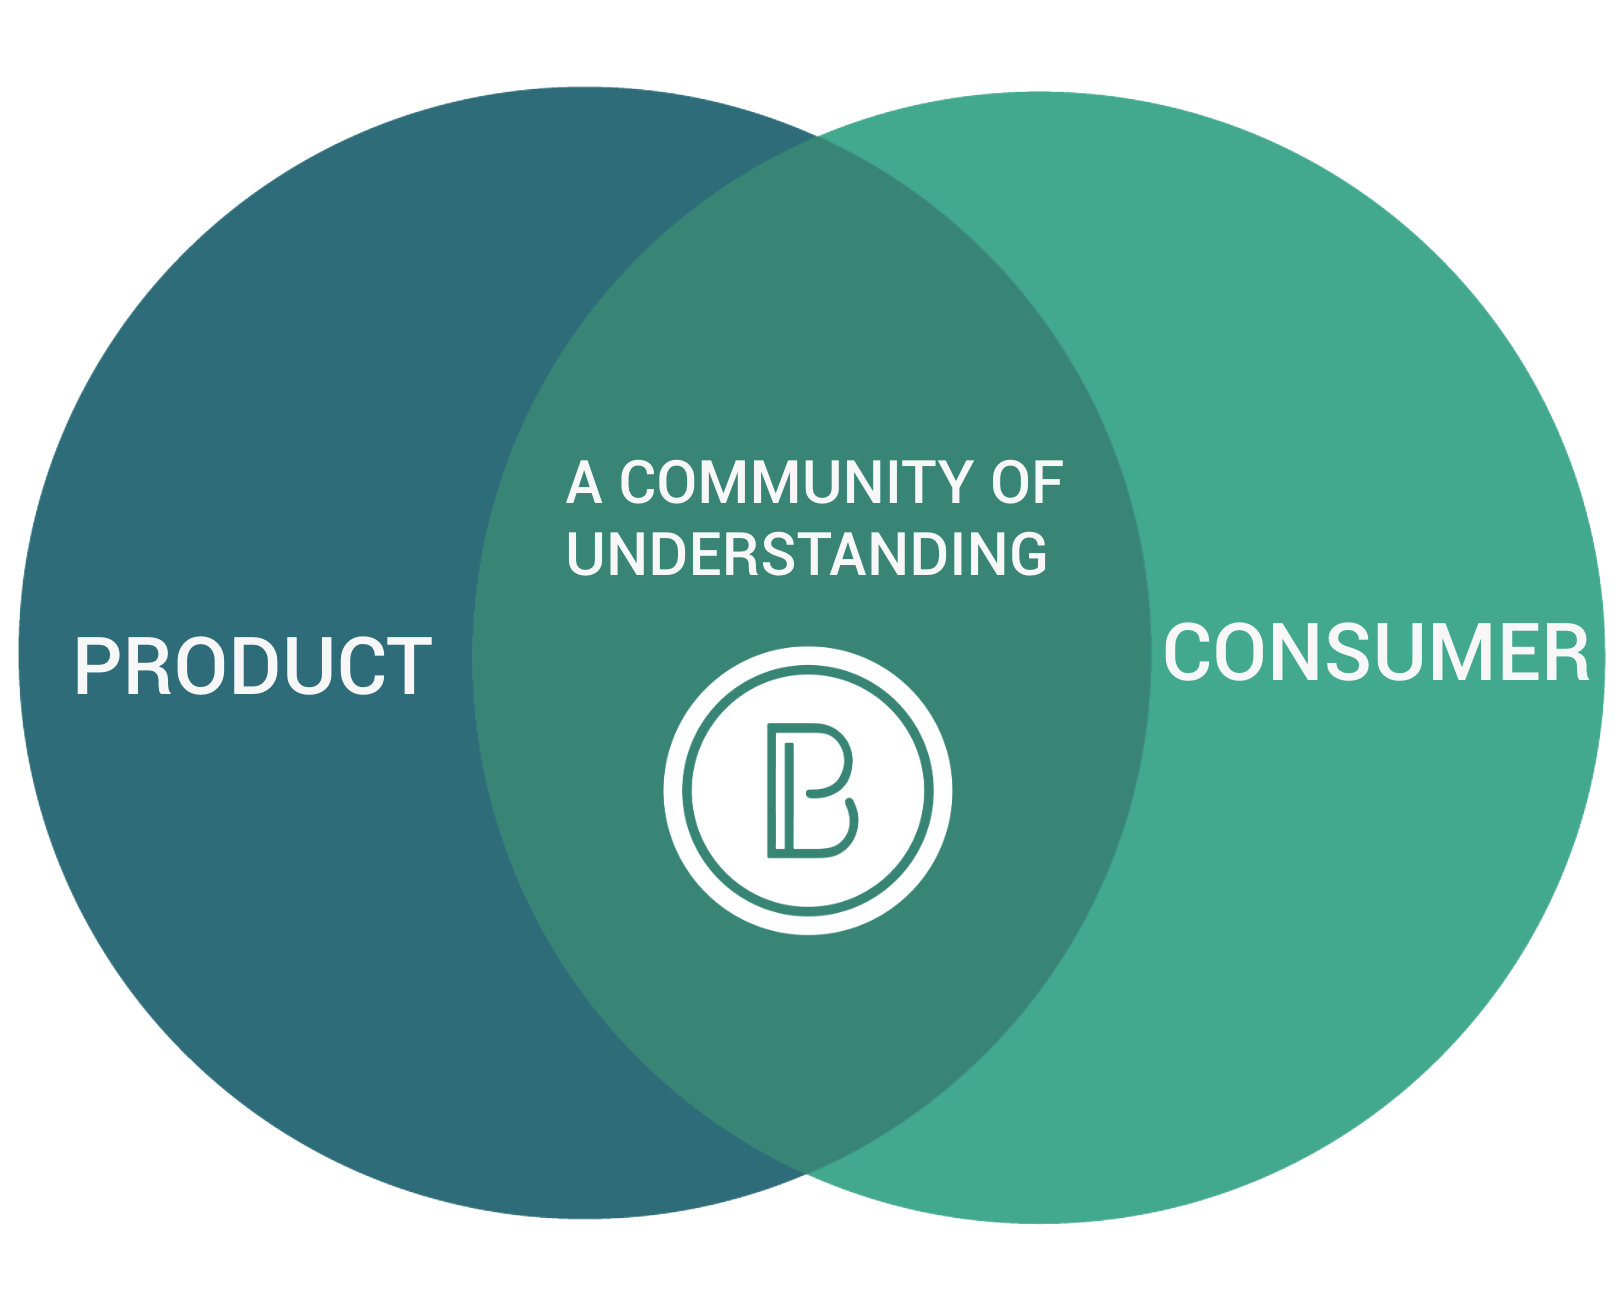 生活我们的使命 - 我们是一个聪明的思想家和独立团队，他们将想法转化为为食物体验交叉口成功而建立的产品。布里斯坦在消费者和产品理解的核心上建立并激活社区。